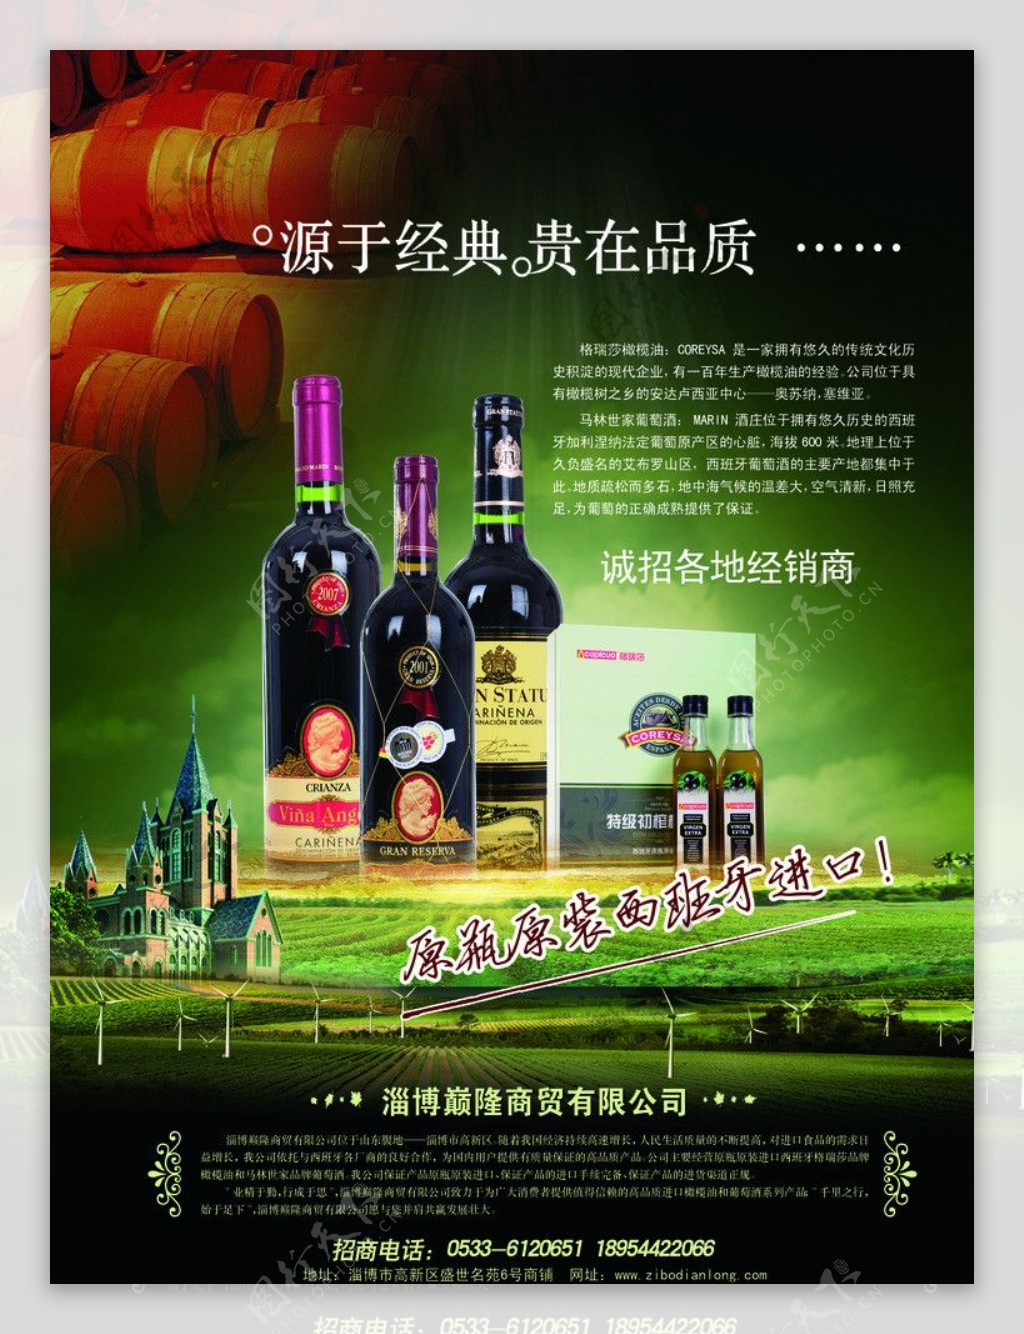 高端葡萄酒庄园广告图片